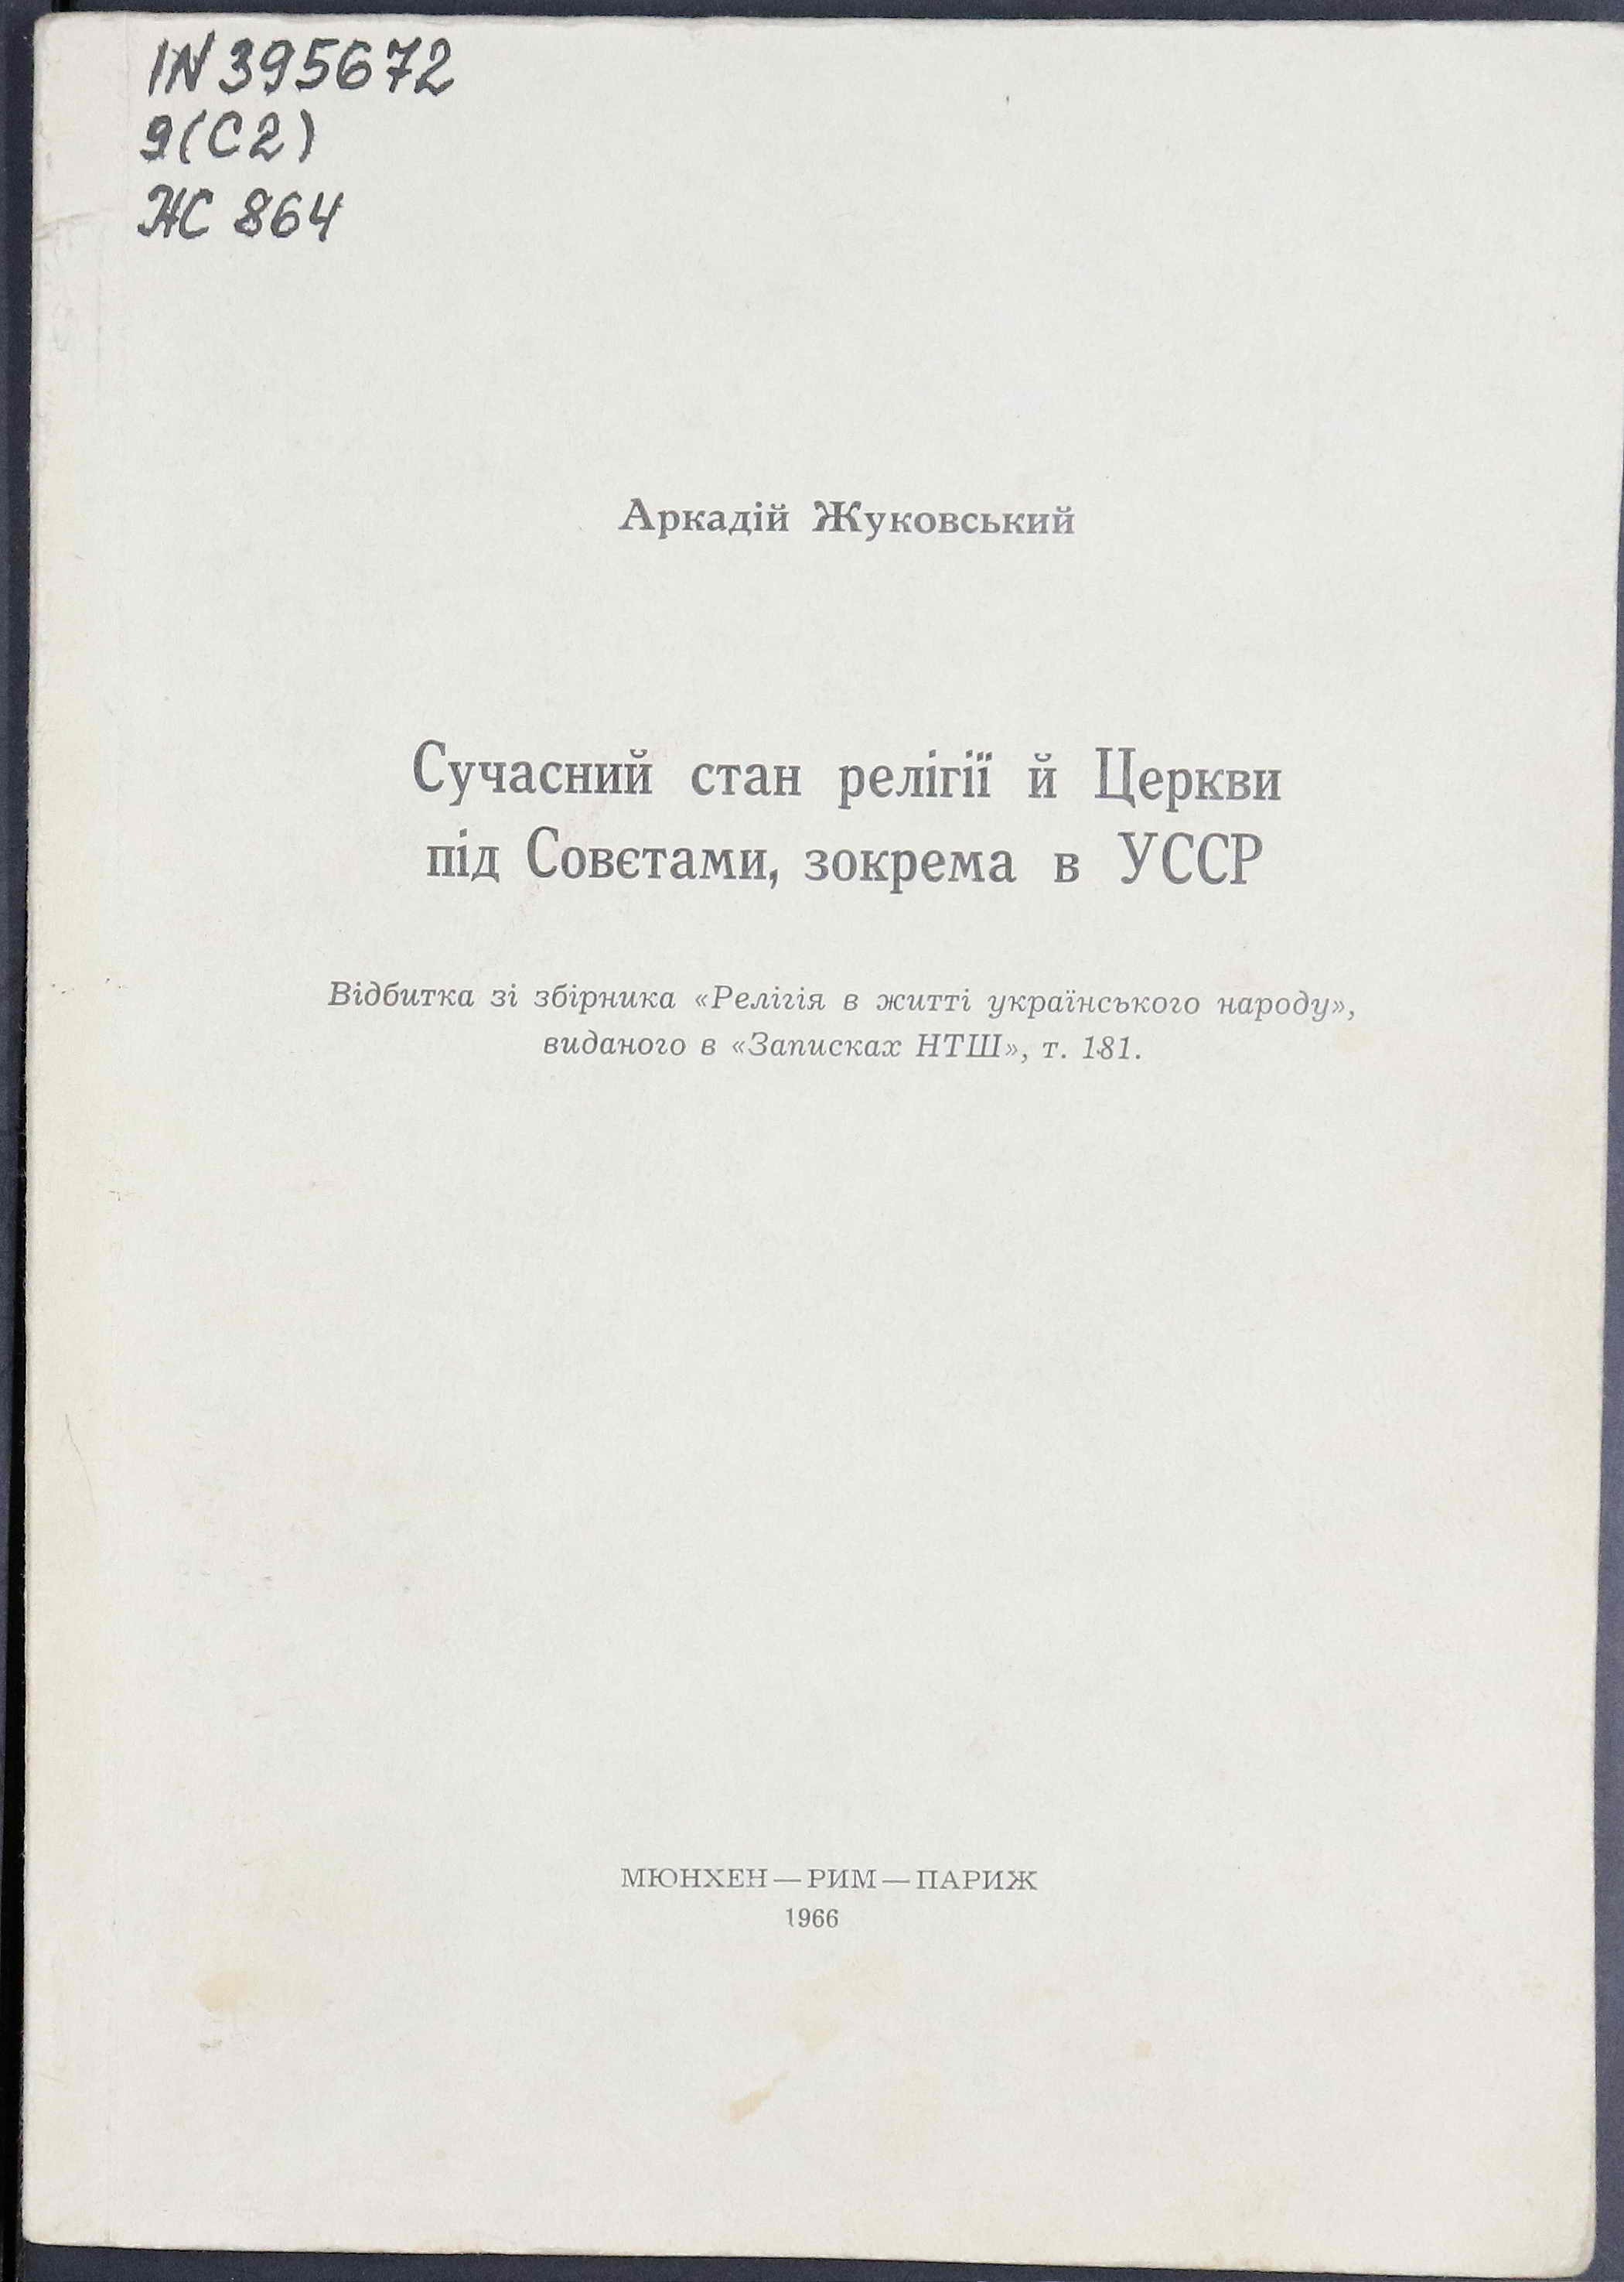 Сучасний стан релігії й церкви під Совєтами, зокрема в УССР